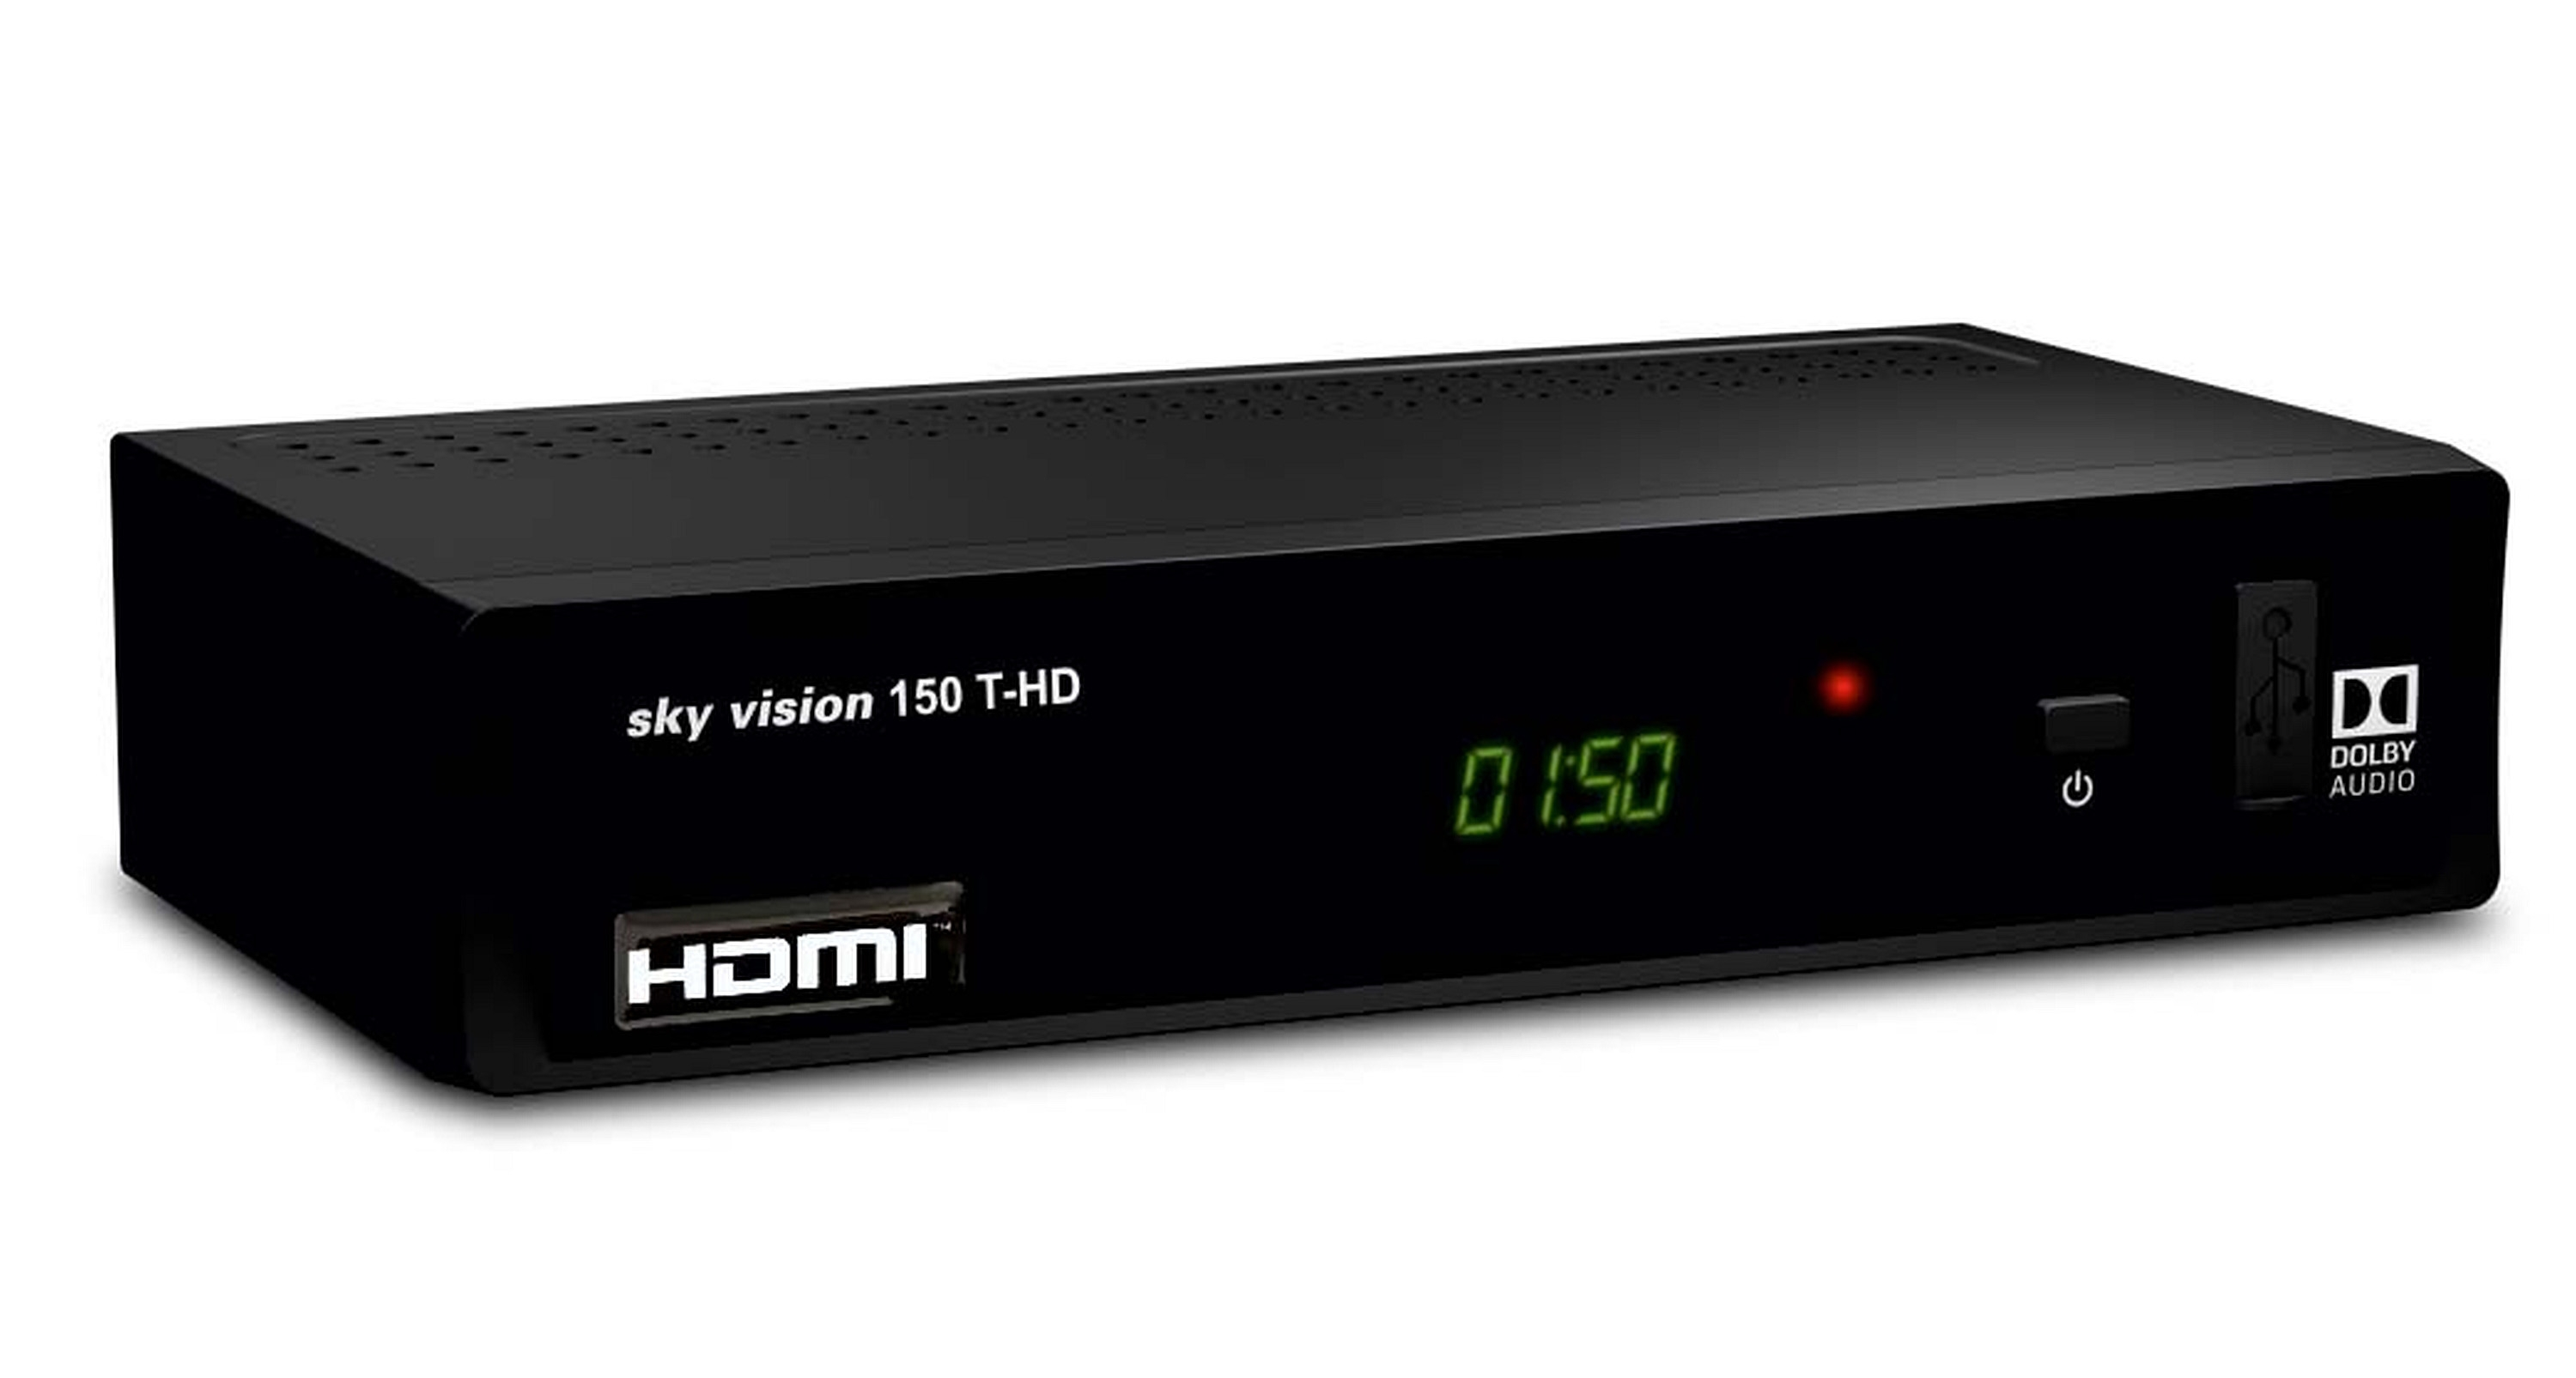 SKY VISION R9606 DVB-T-Receiver schwarz) DVB-T2 (H.265), (DVB-T